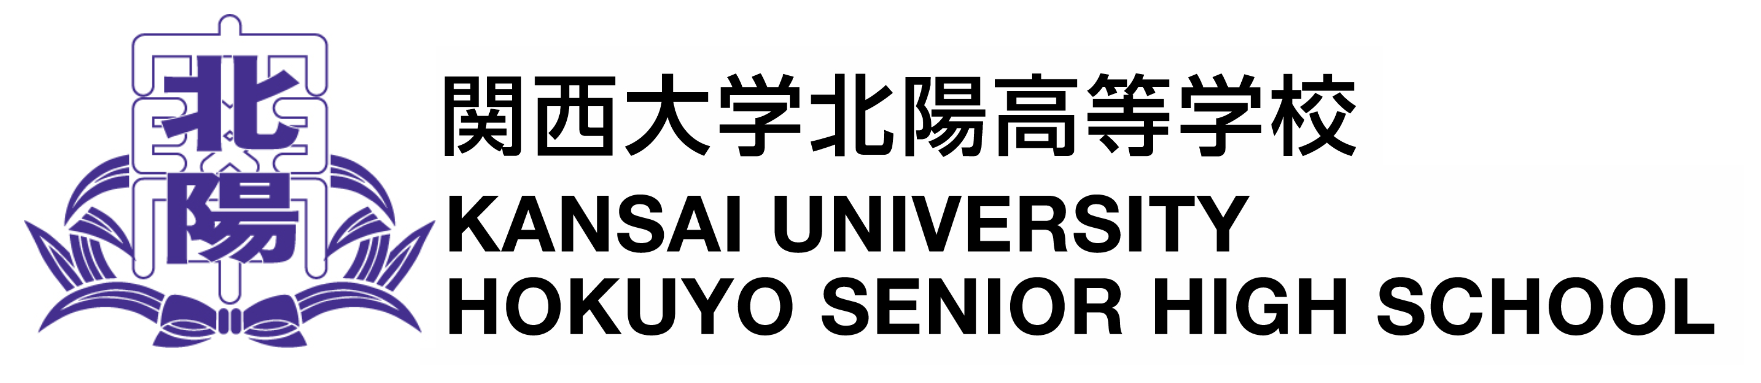 関西大学北陽高等学校ロゴ